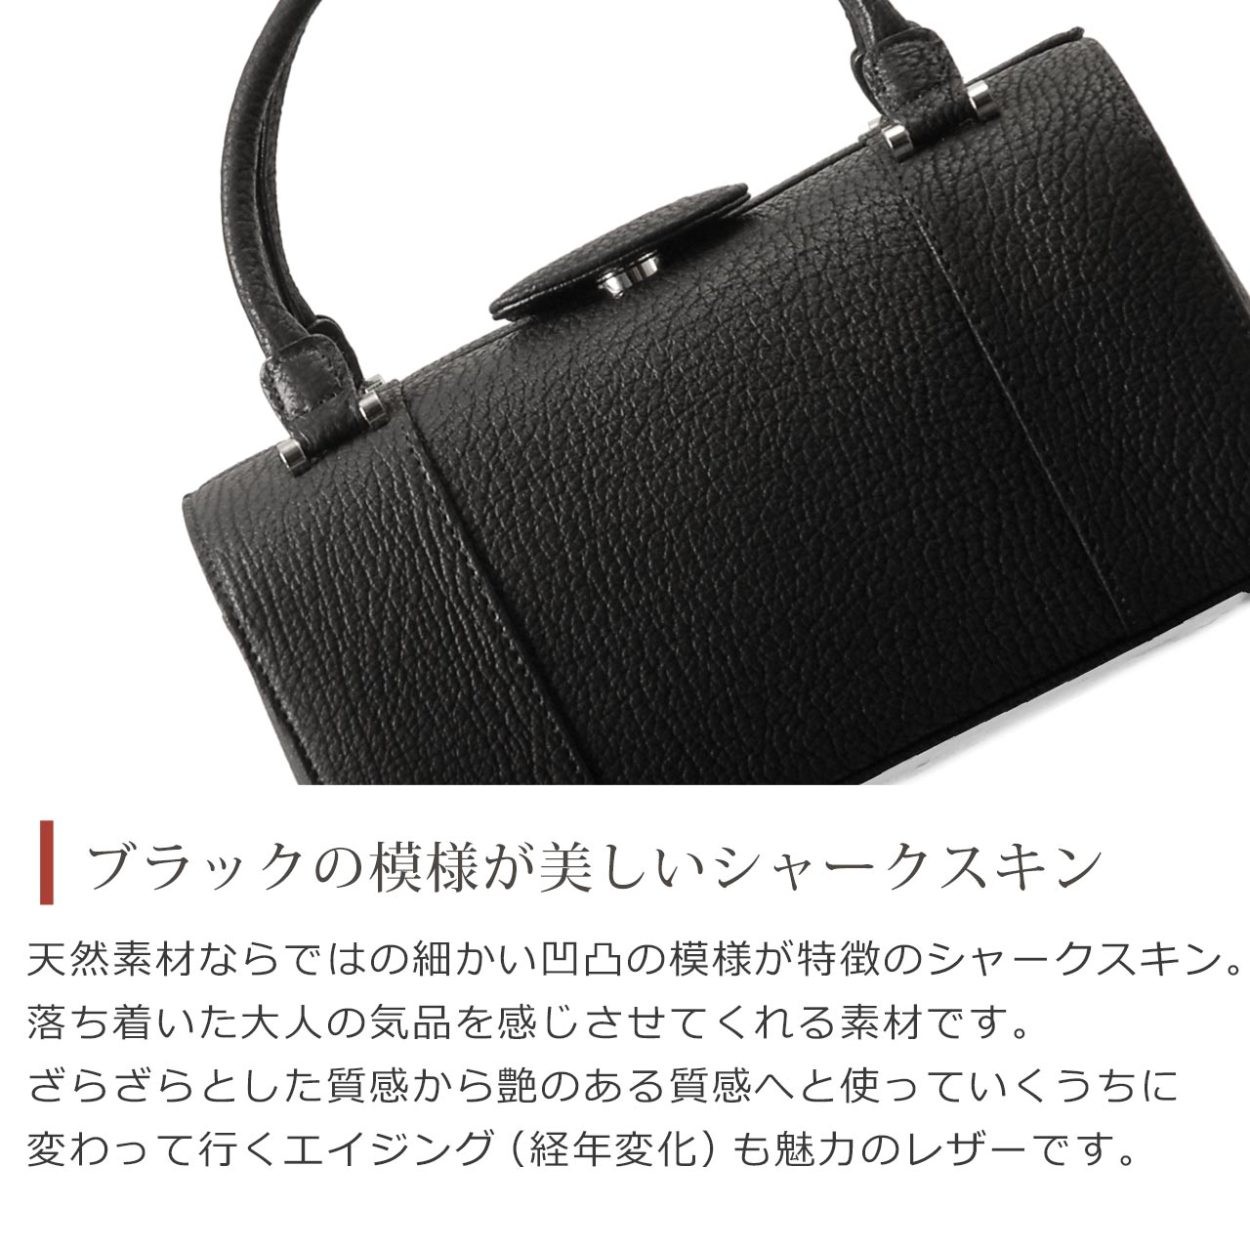 シャーク ブラック フォーマルバッグ レディース 日本製 本革 ボックス 